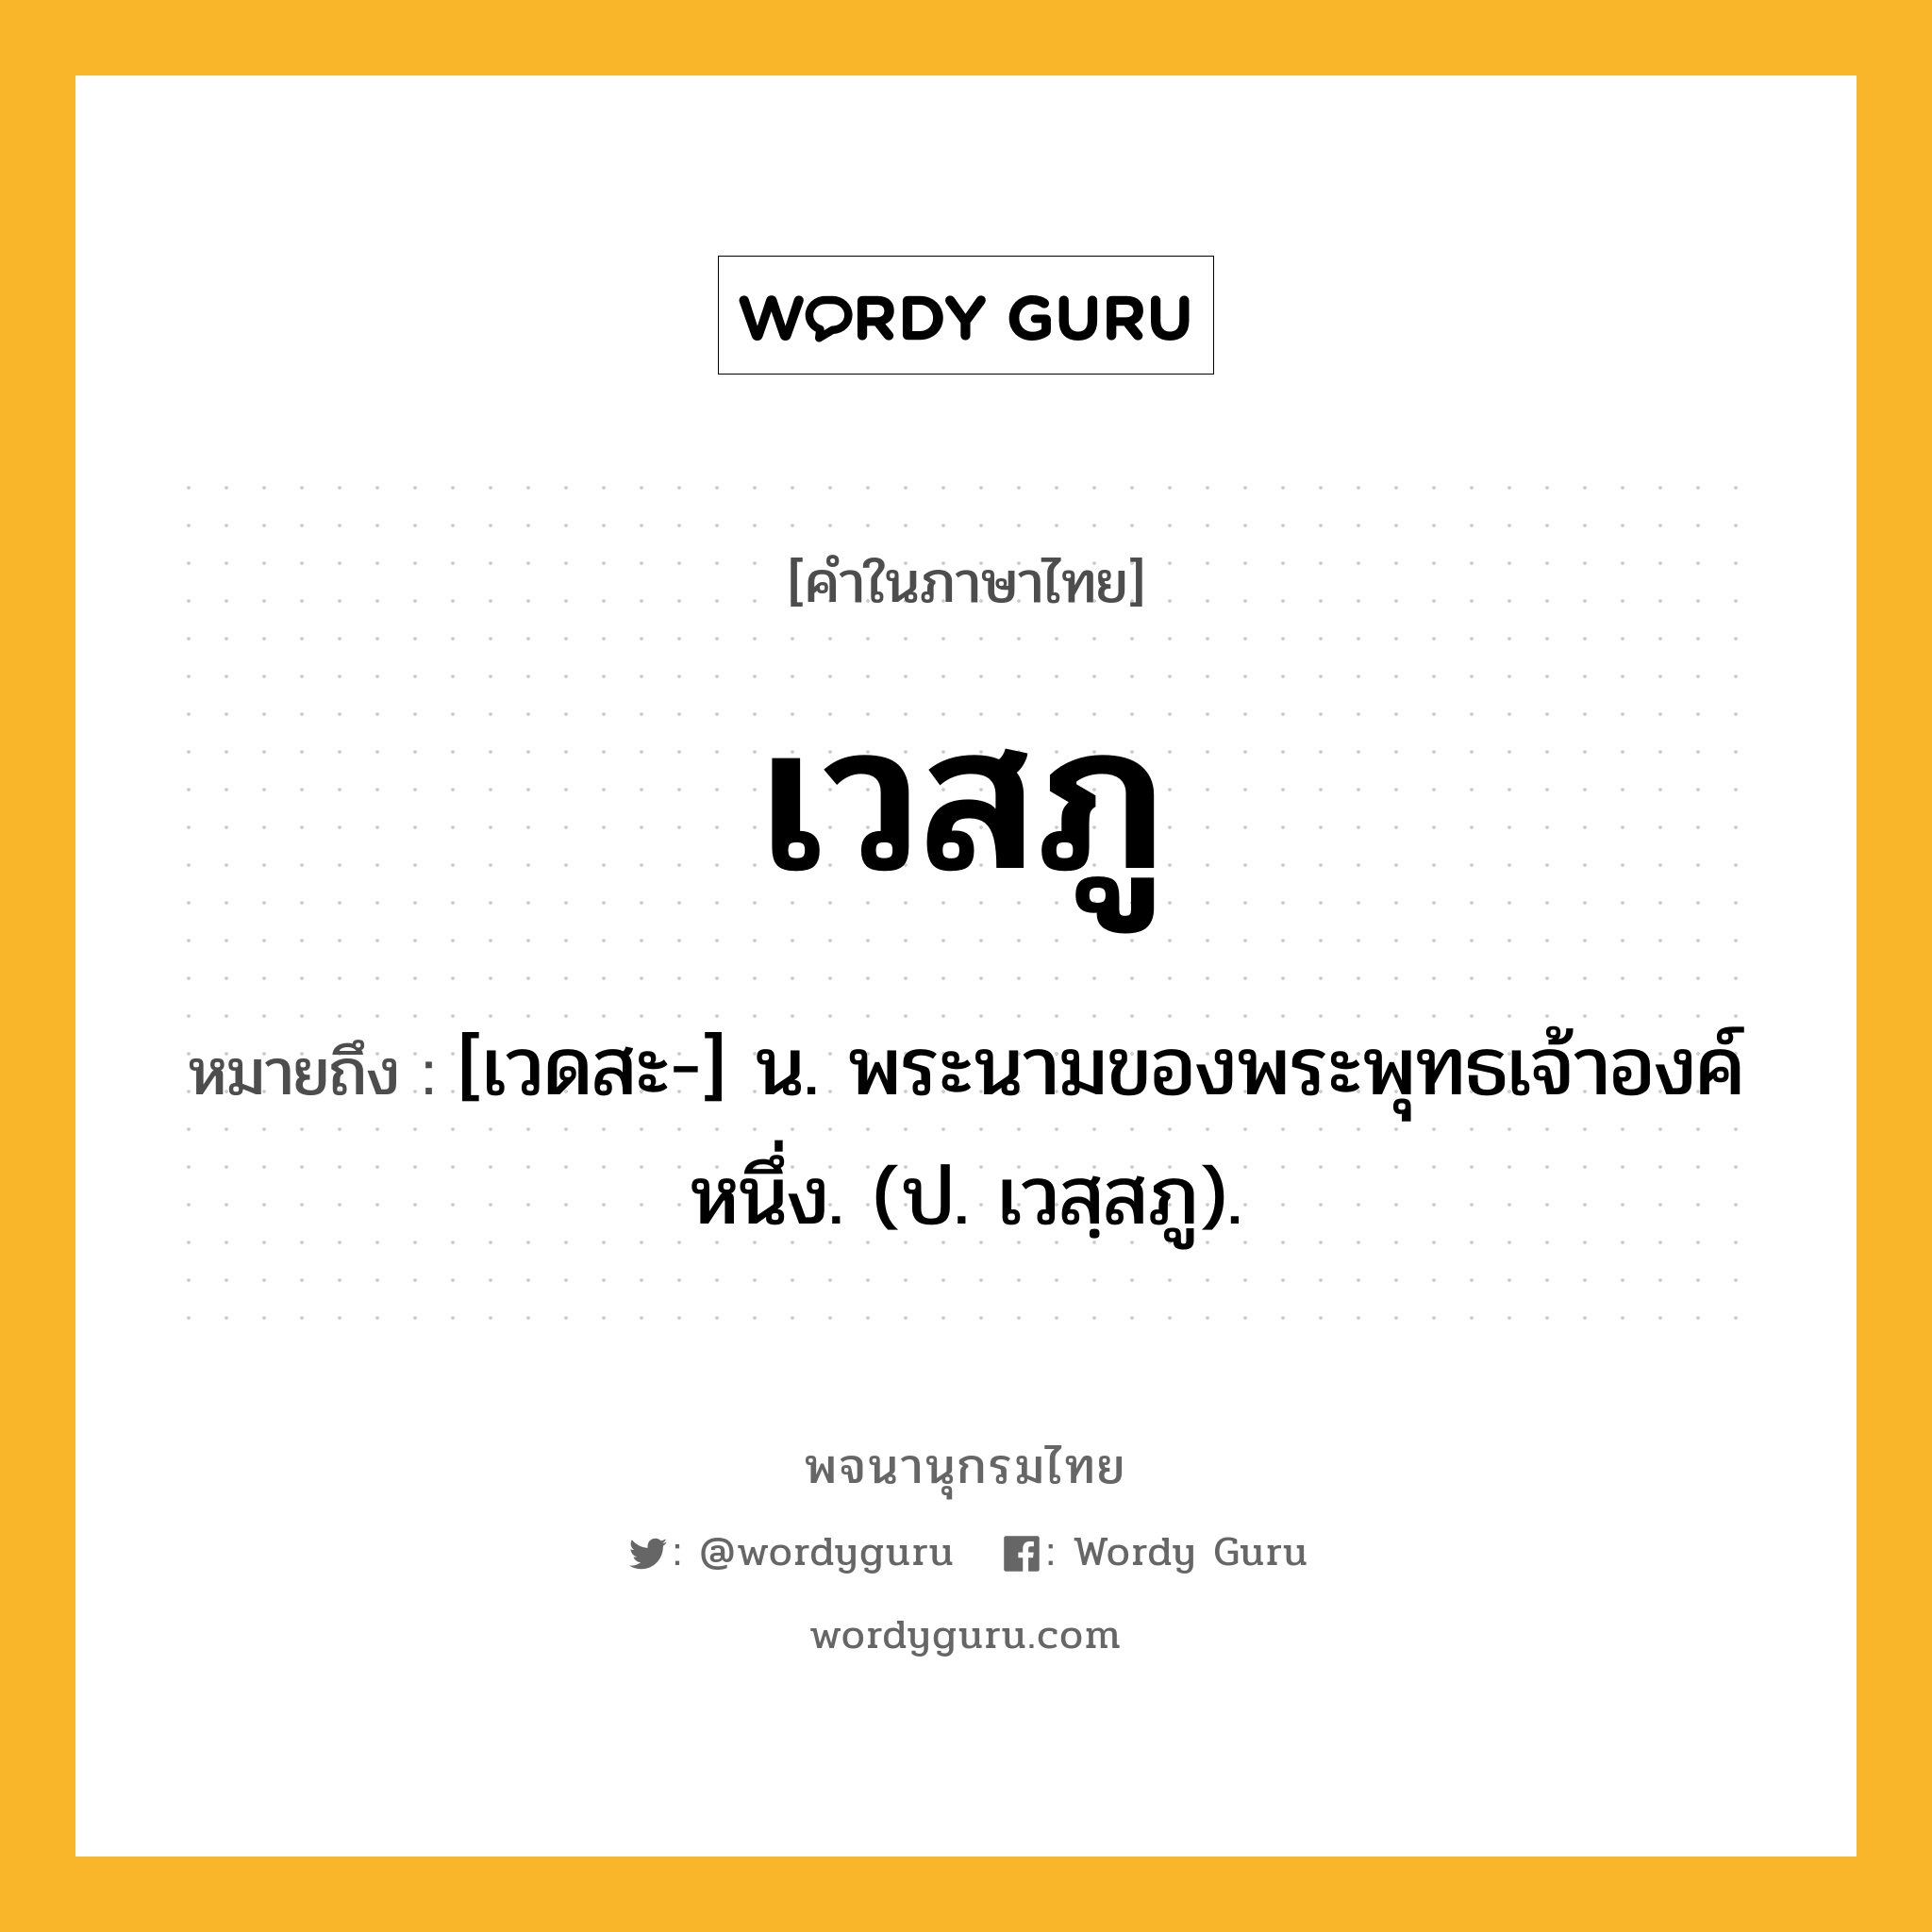 เวสภู หมายถึงอะไร?, คำในภาษาไทย เวสภู หมายถึง [เวดสะ-] น. พระนามของพระพุทธเจ้าองค์หนึ่ง. (ป. เวสฺสภู).